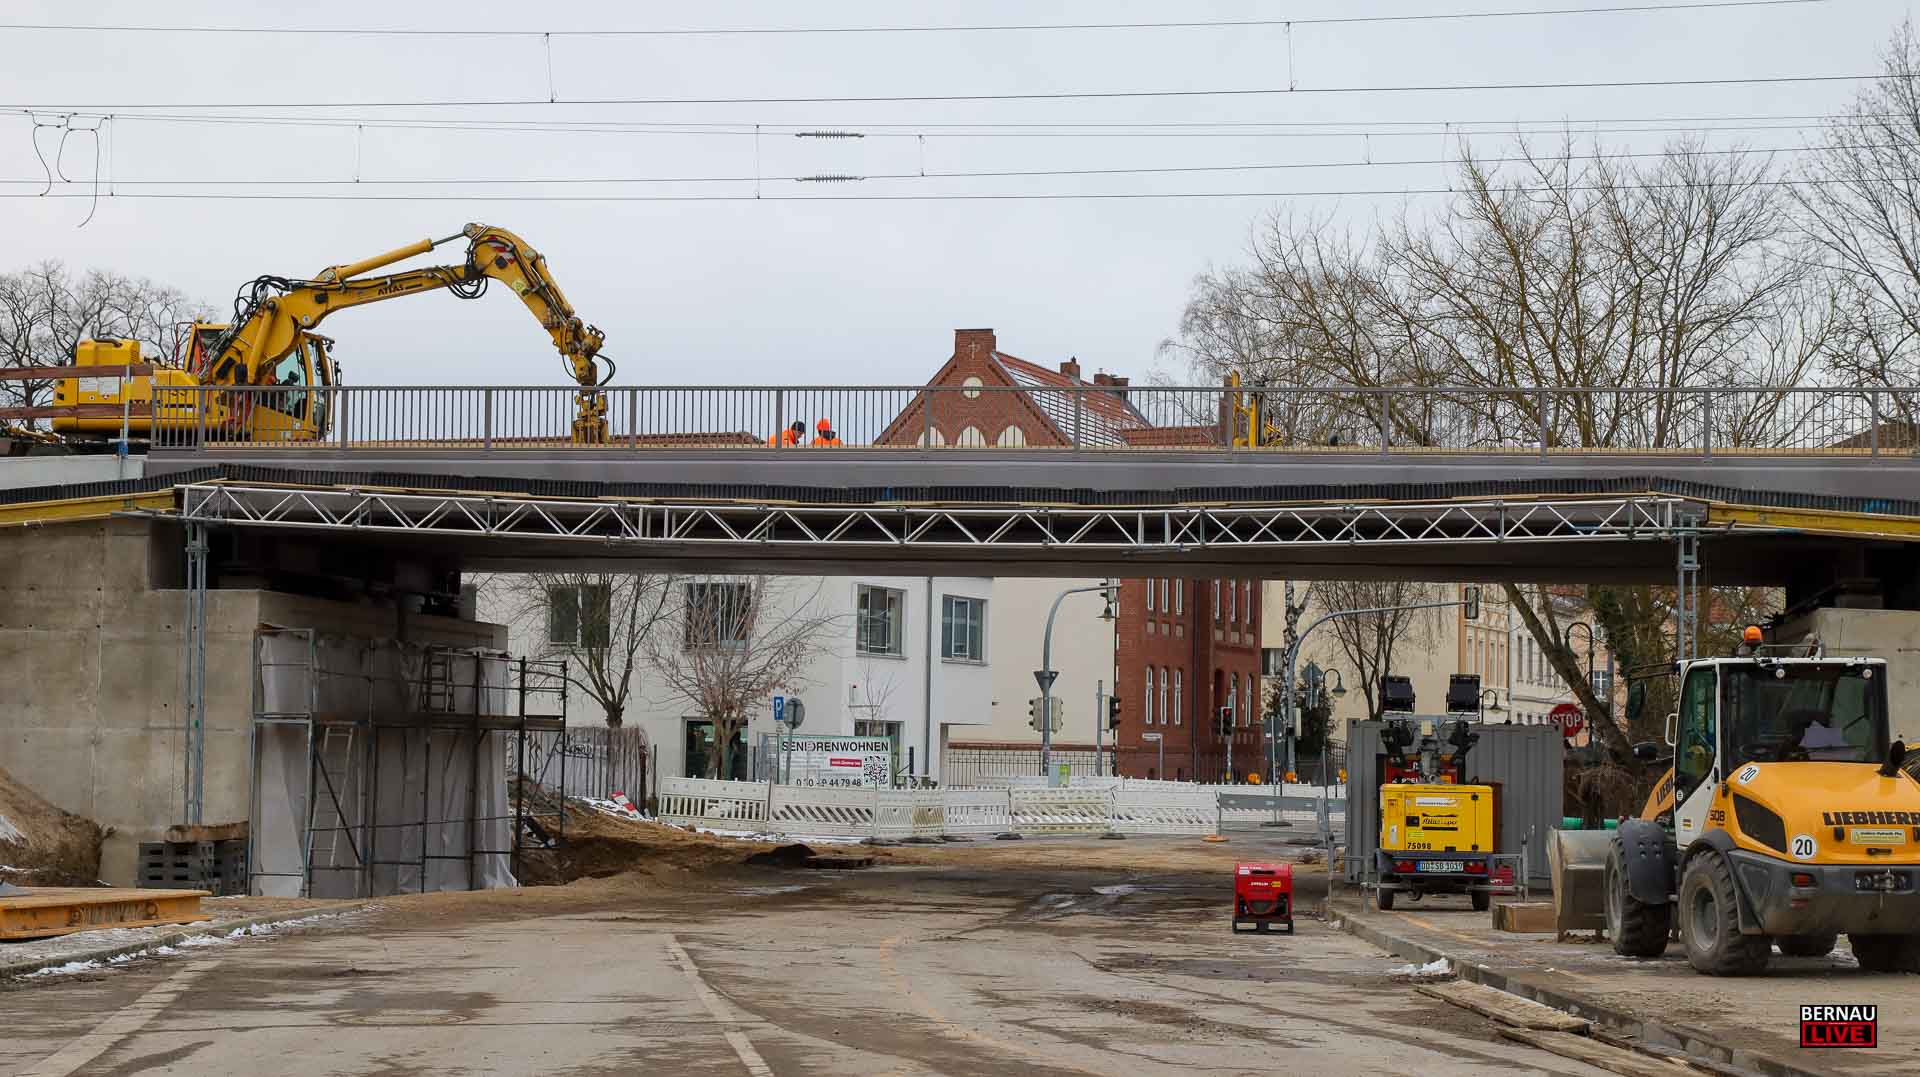 Neue Bahnbrücke an der Börnicker Chaussee eingesetzt - Zugverkehr ab Montag